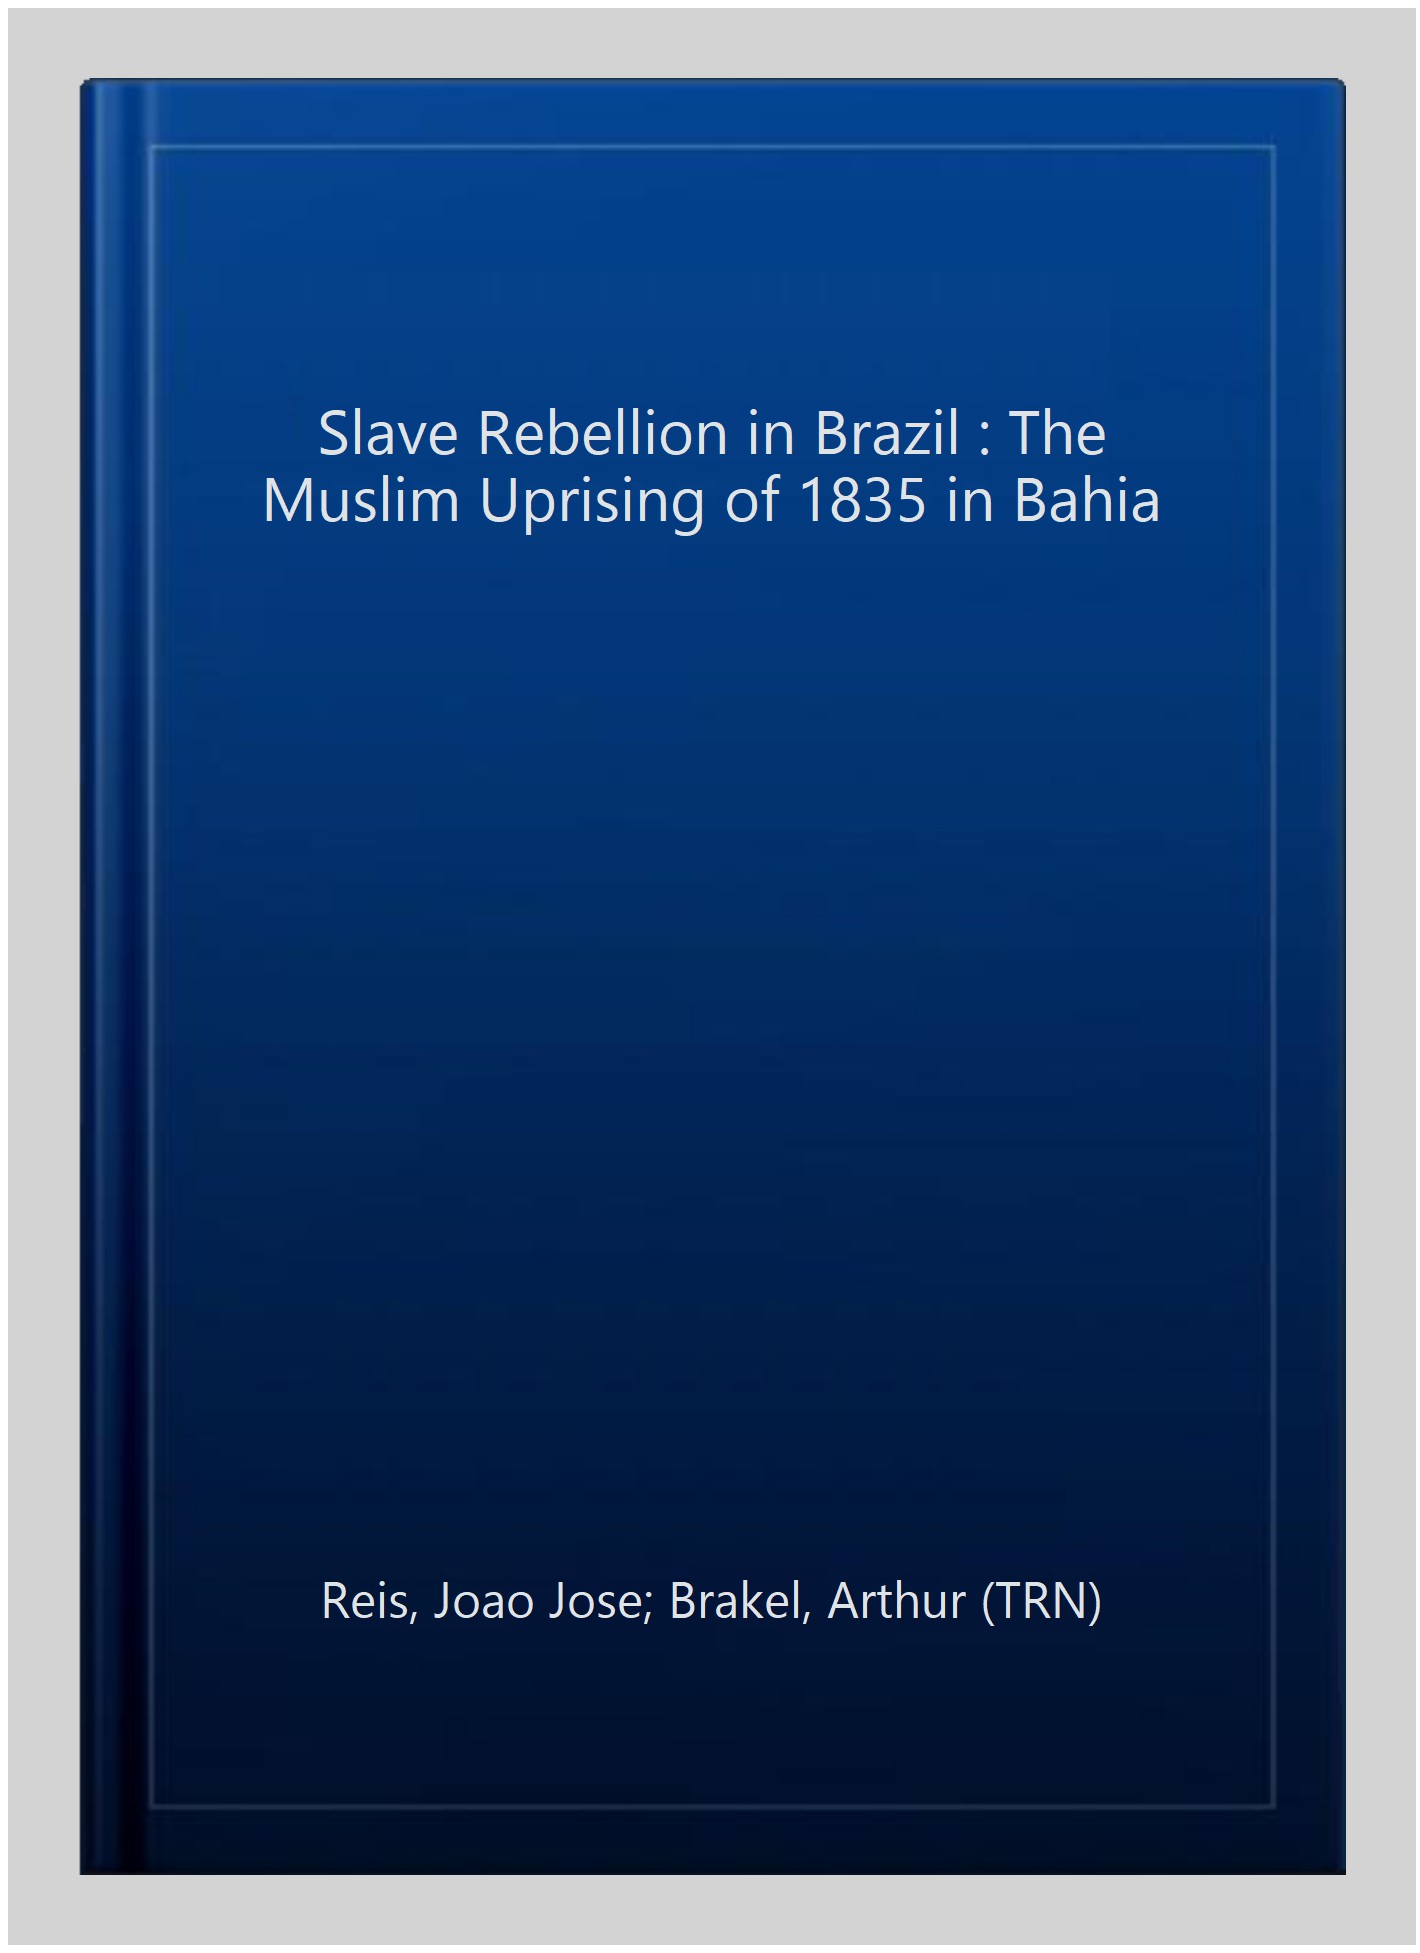 Slave Rebellion in Brazil : The Muslim Uprising of 1835 in Bahia - Reis, Joao Jose; Brakel, Arthur (TRN)